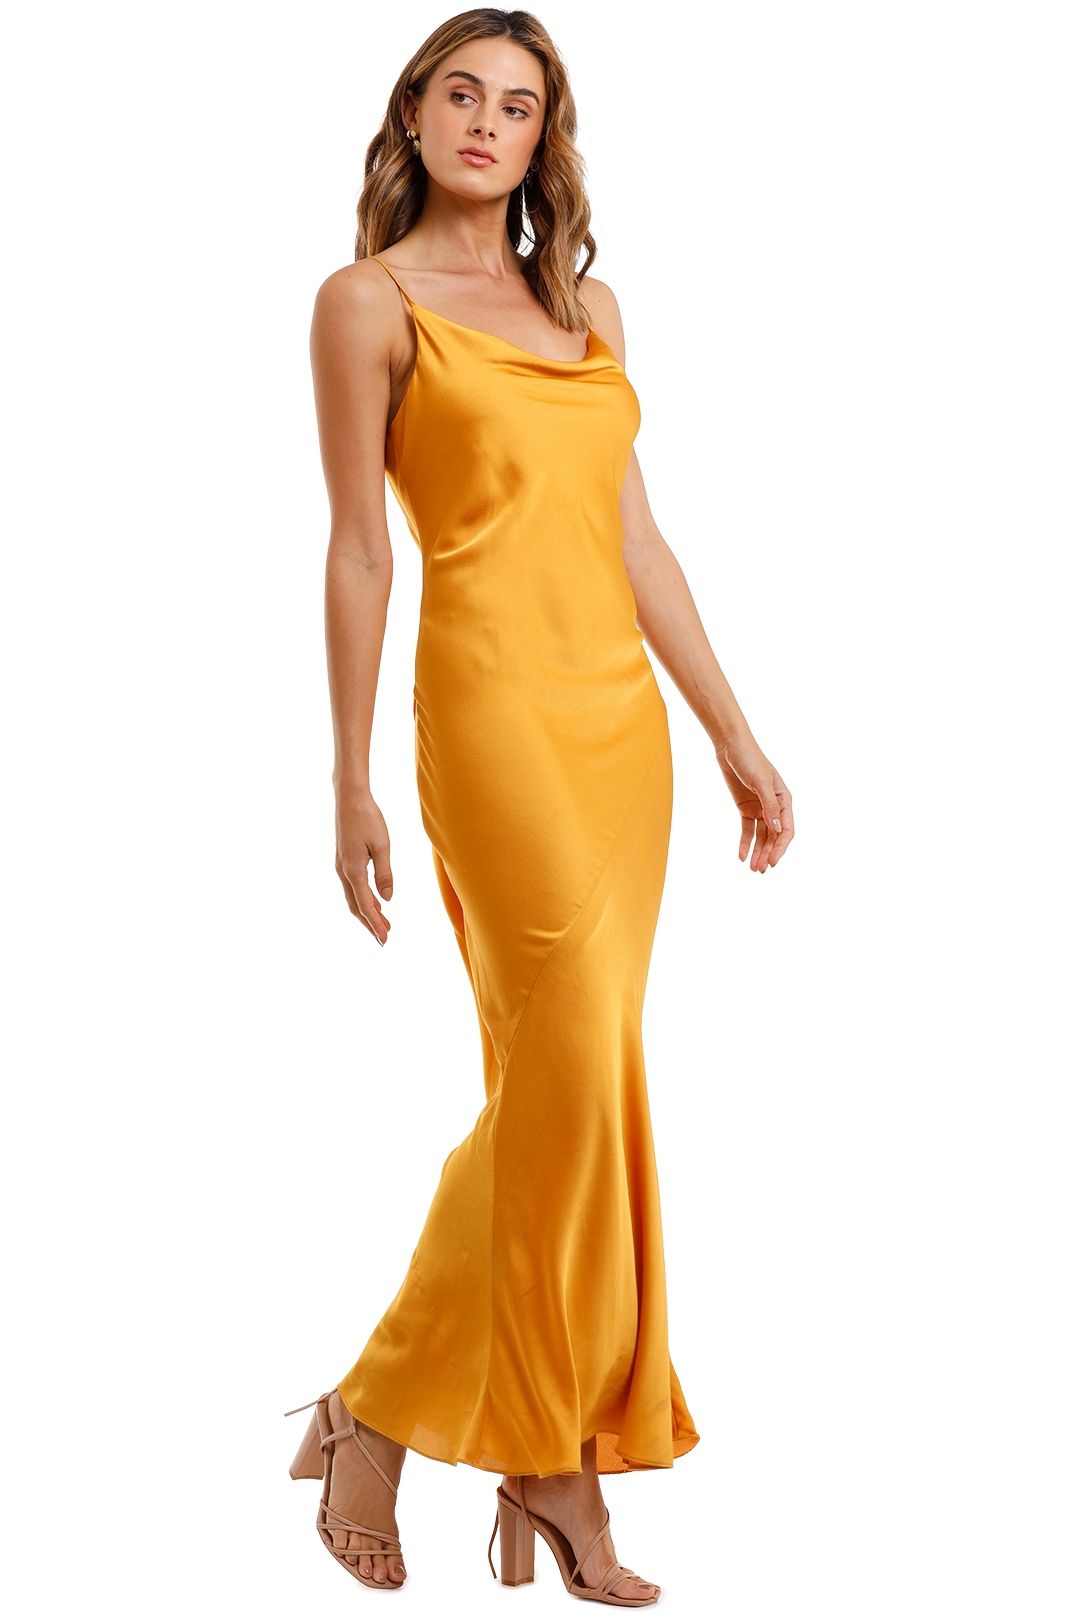 Shona Joy Bias Cowl Maxi Dress Saffron sleeveless